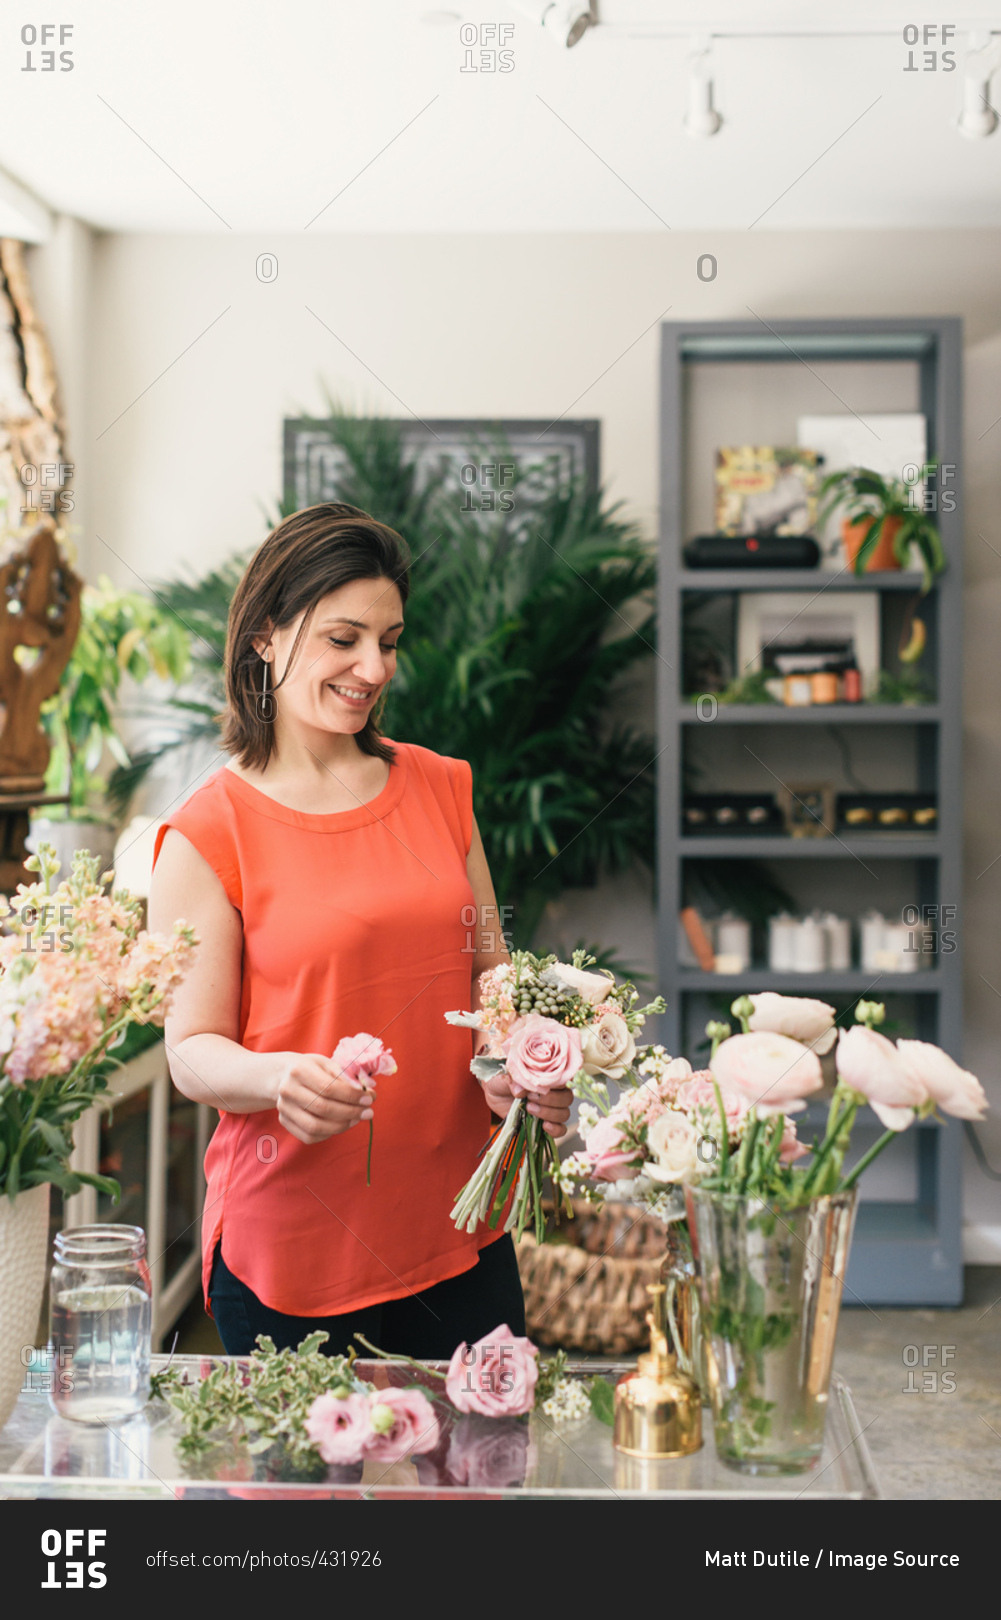 Florist arranging bouquet in flower shop